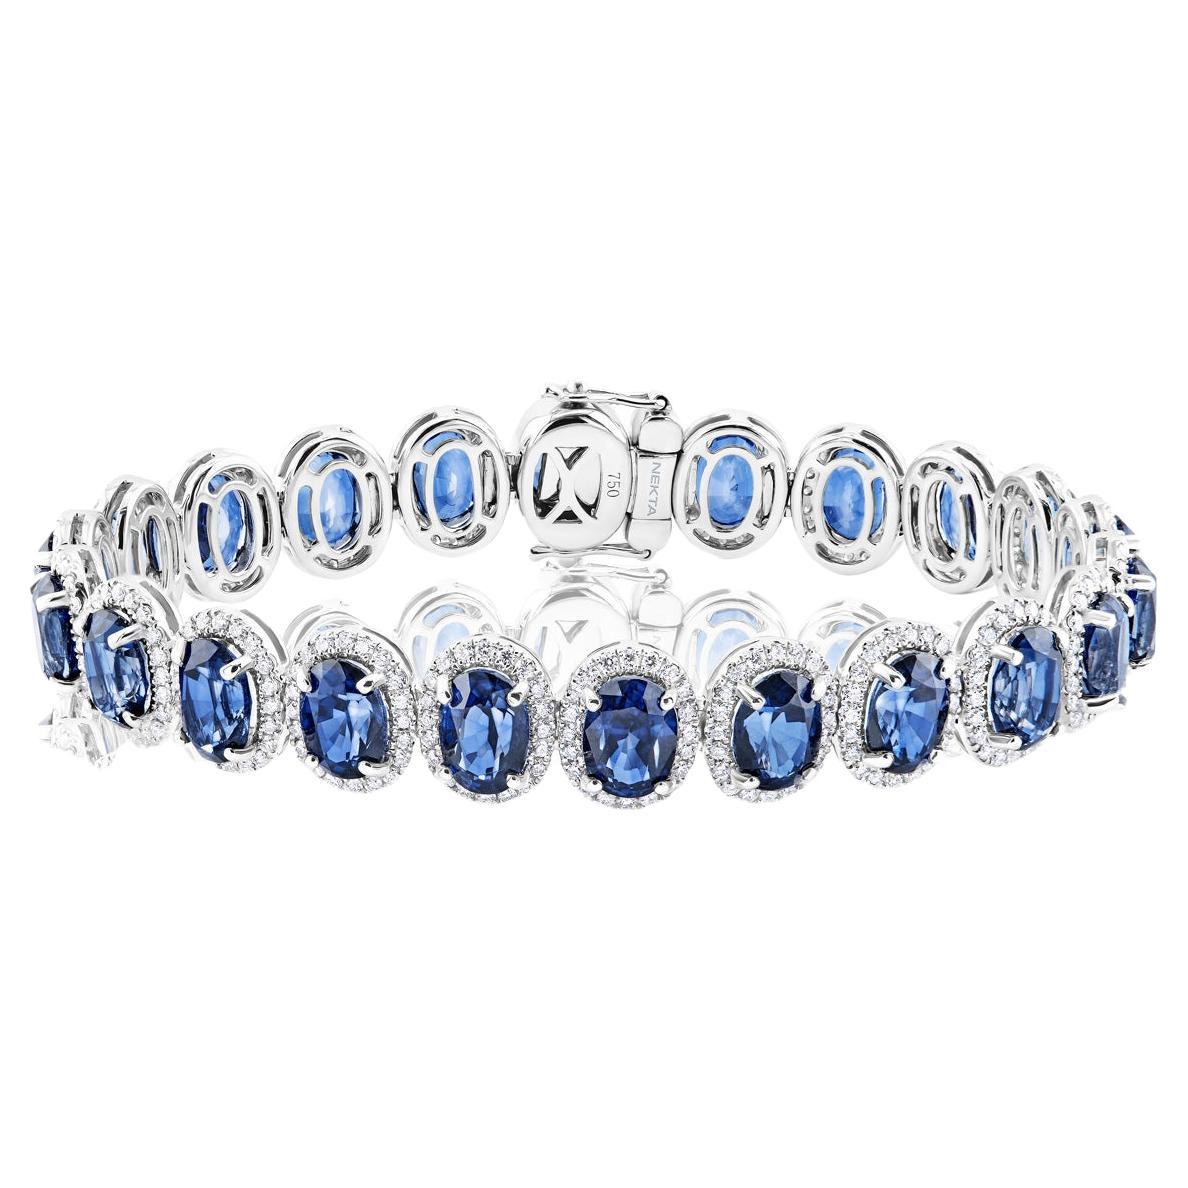 26 Carat Oval Cut J'adore Blue Sapphire Bracelet Certified en vente